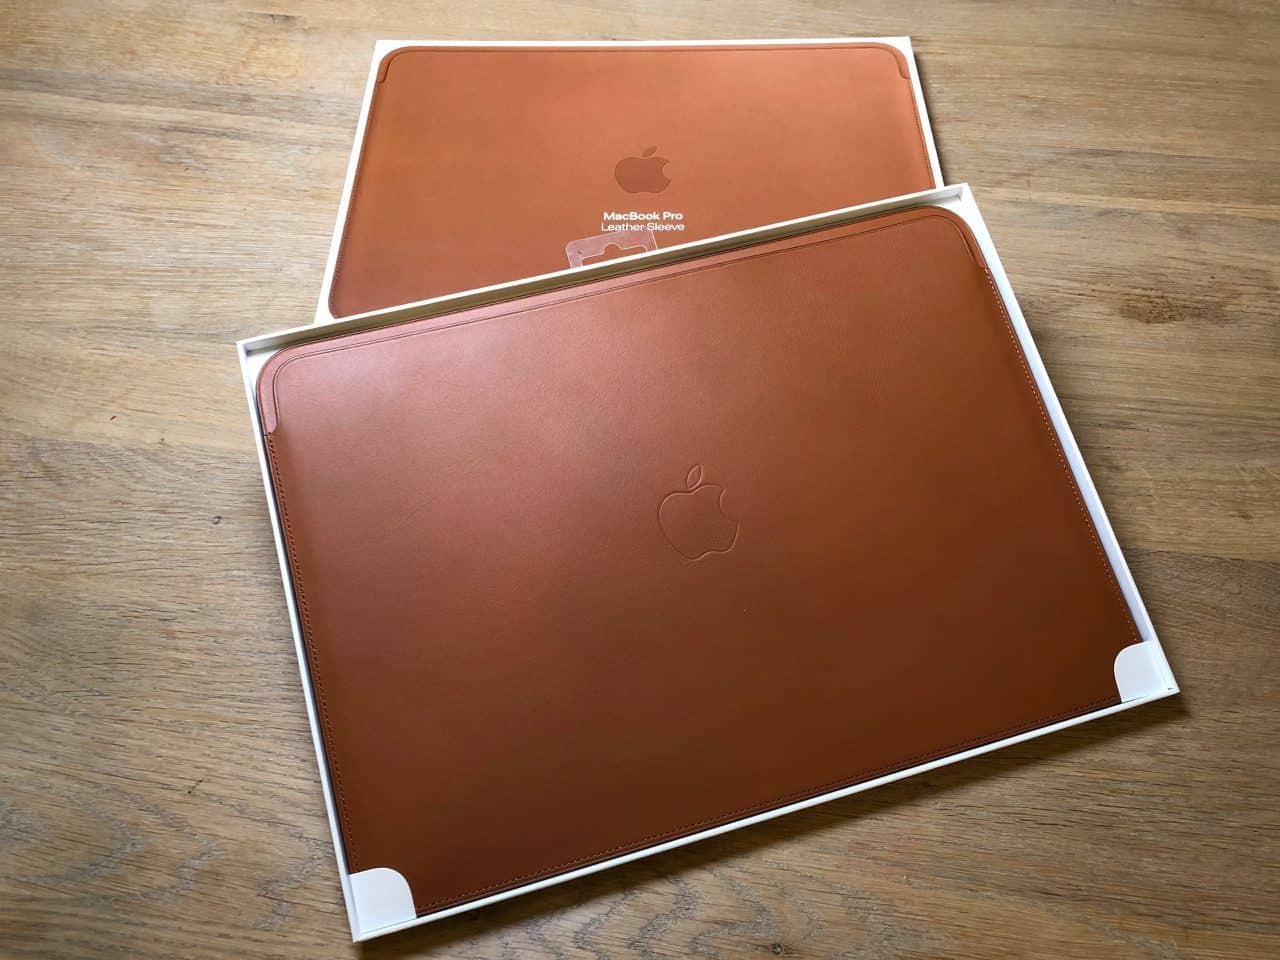 Leren Sleeve voor MacBook Pro met verpakking.